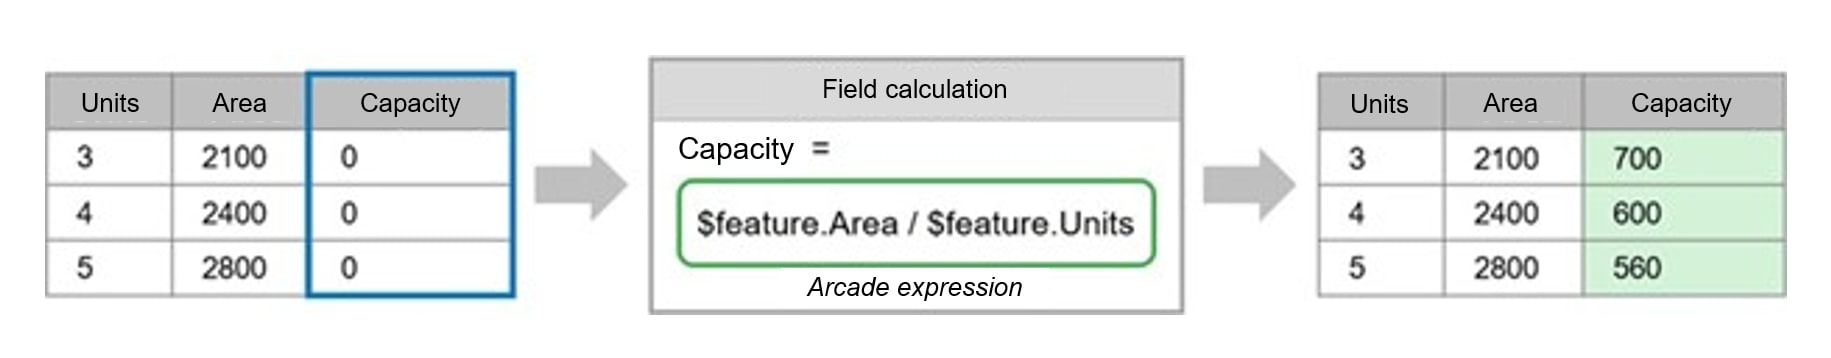 Un diagramme de processus en trois étapes. Les flèches grises indiquent le passage d’une étape à l’autre. La première étape est représentée par une feuille de calcul ou un tableau comportant trois colonnes, soit « Unités », « Superficie » et « Capacité », et quatre lignes, chacune contenant des données fictives. La colonne « Capacité » est surlignée. La deuxième étape du processus est appelée « Calcul des champs »; l’utilisateur a saisi une expression Arcade (dans ce cas, « $feature.Area / $feature.Units ») dans un champ. La troisième et dernière étape du processus illustre le résultat de l’expression Arcade dans la colonne « Capacité » de la première feuille de calcul, surlignée en vert cette fois-ci.